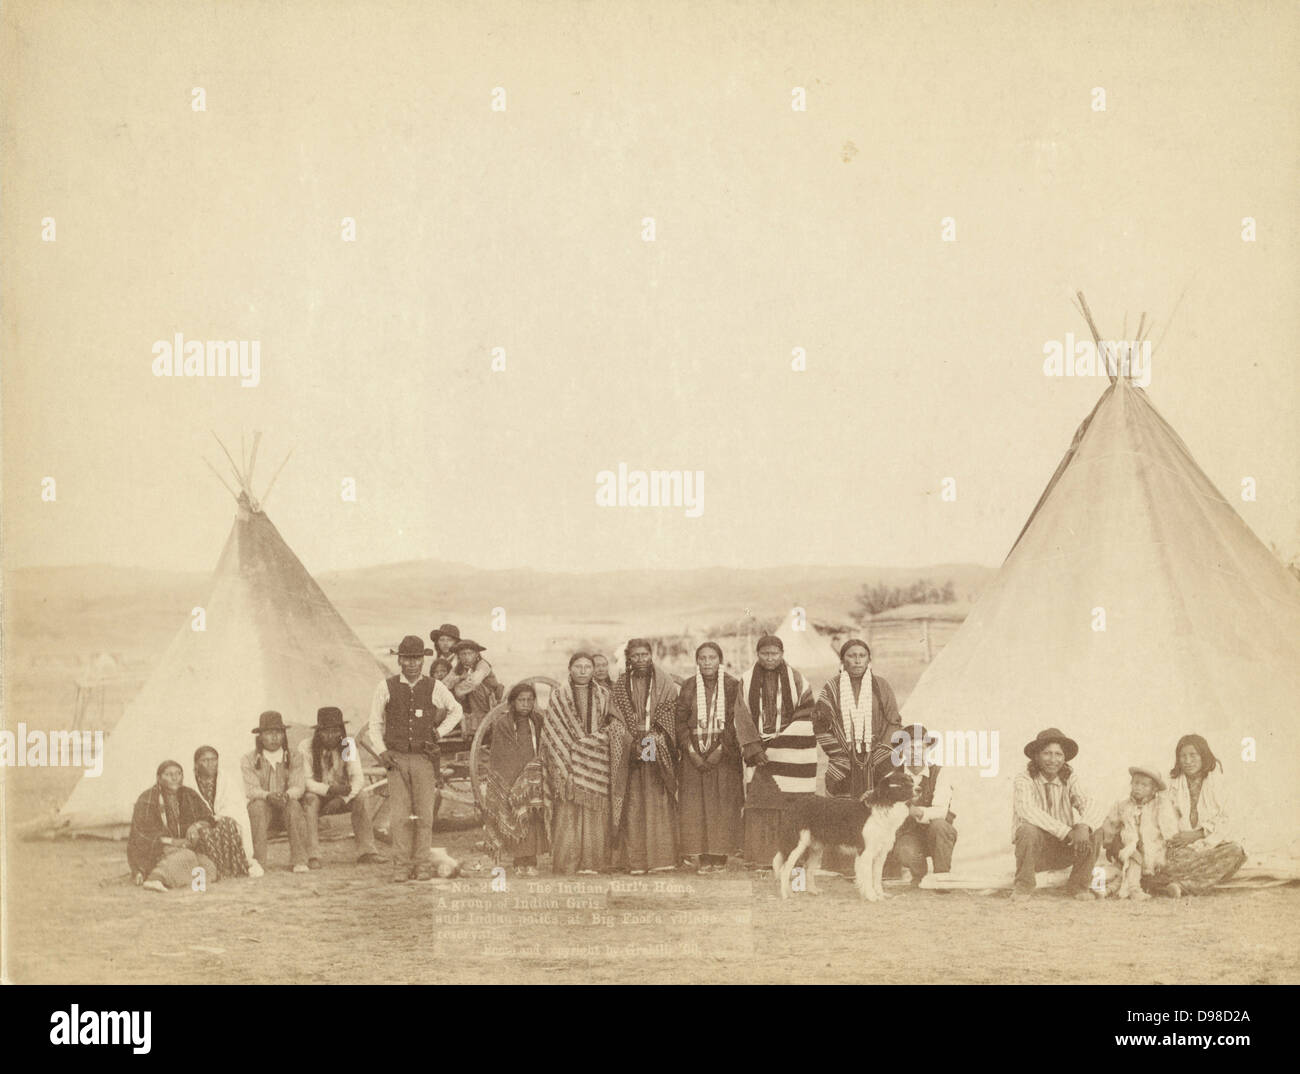 La ragazza indiana della casa. Un gruppo di Indiani ragazze e la polizia indiana a Big Foot del villaggio su prenotazione, 1900. Fotografia di John C. H.Grabill (attivo 1887-1900). Foto Stock